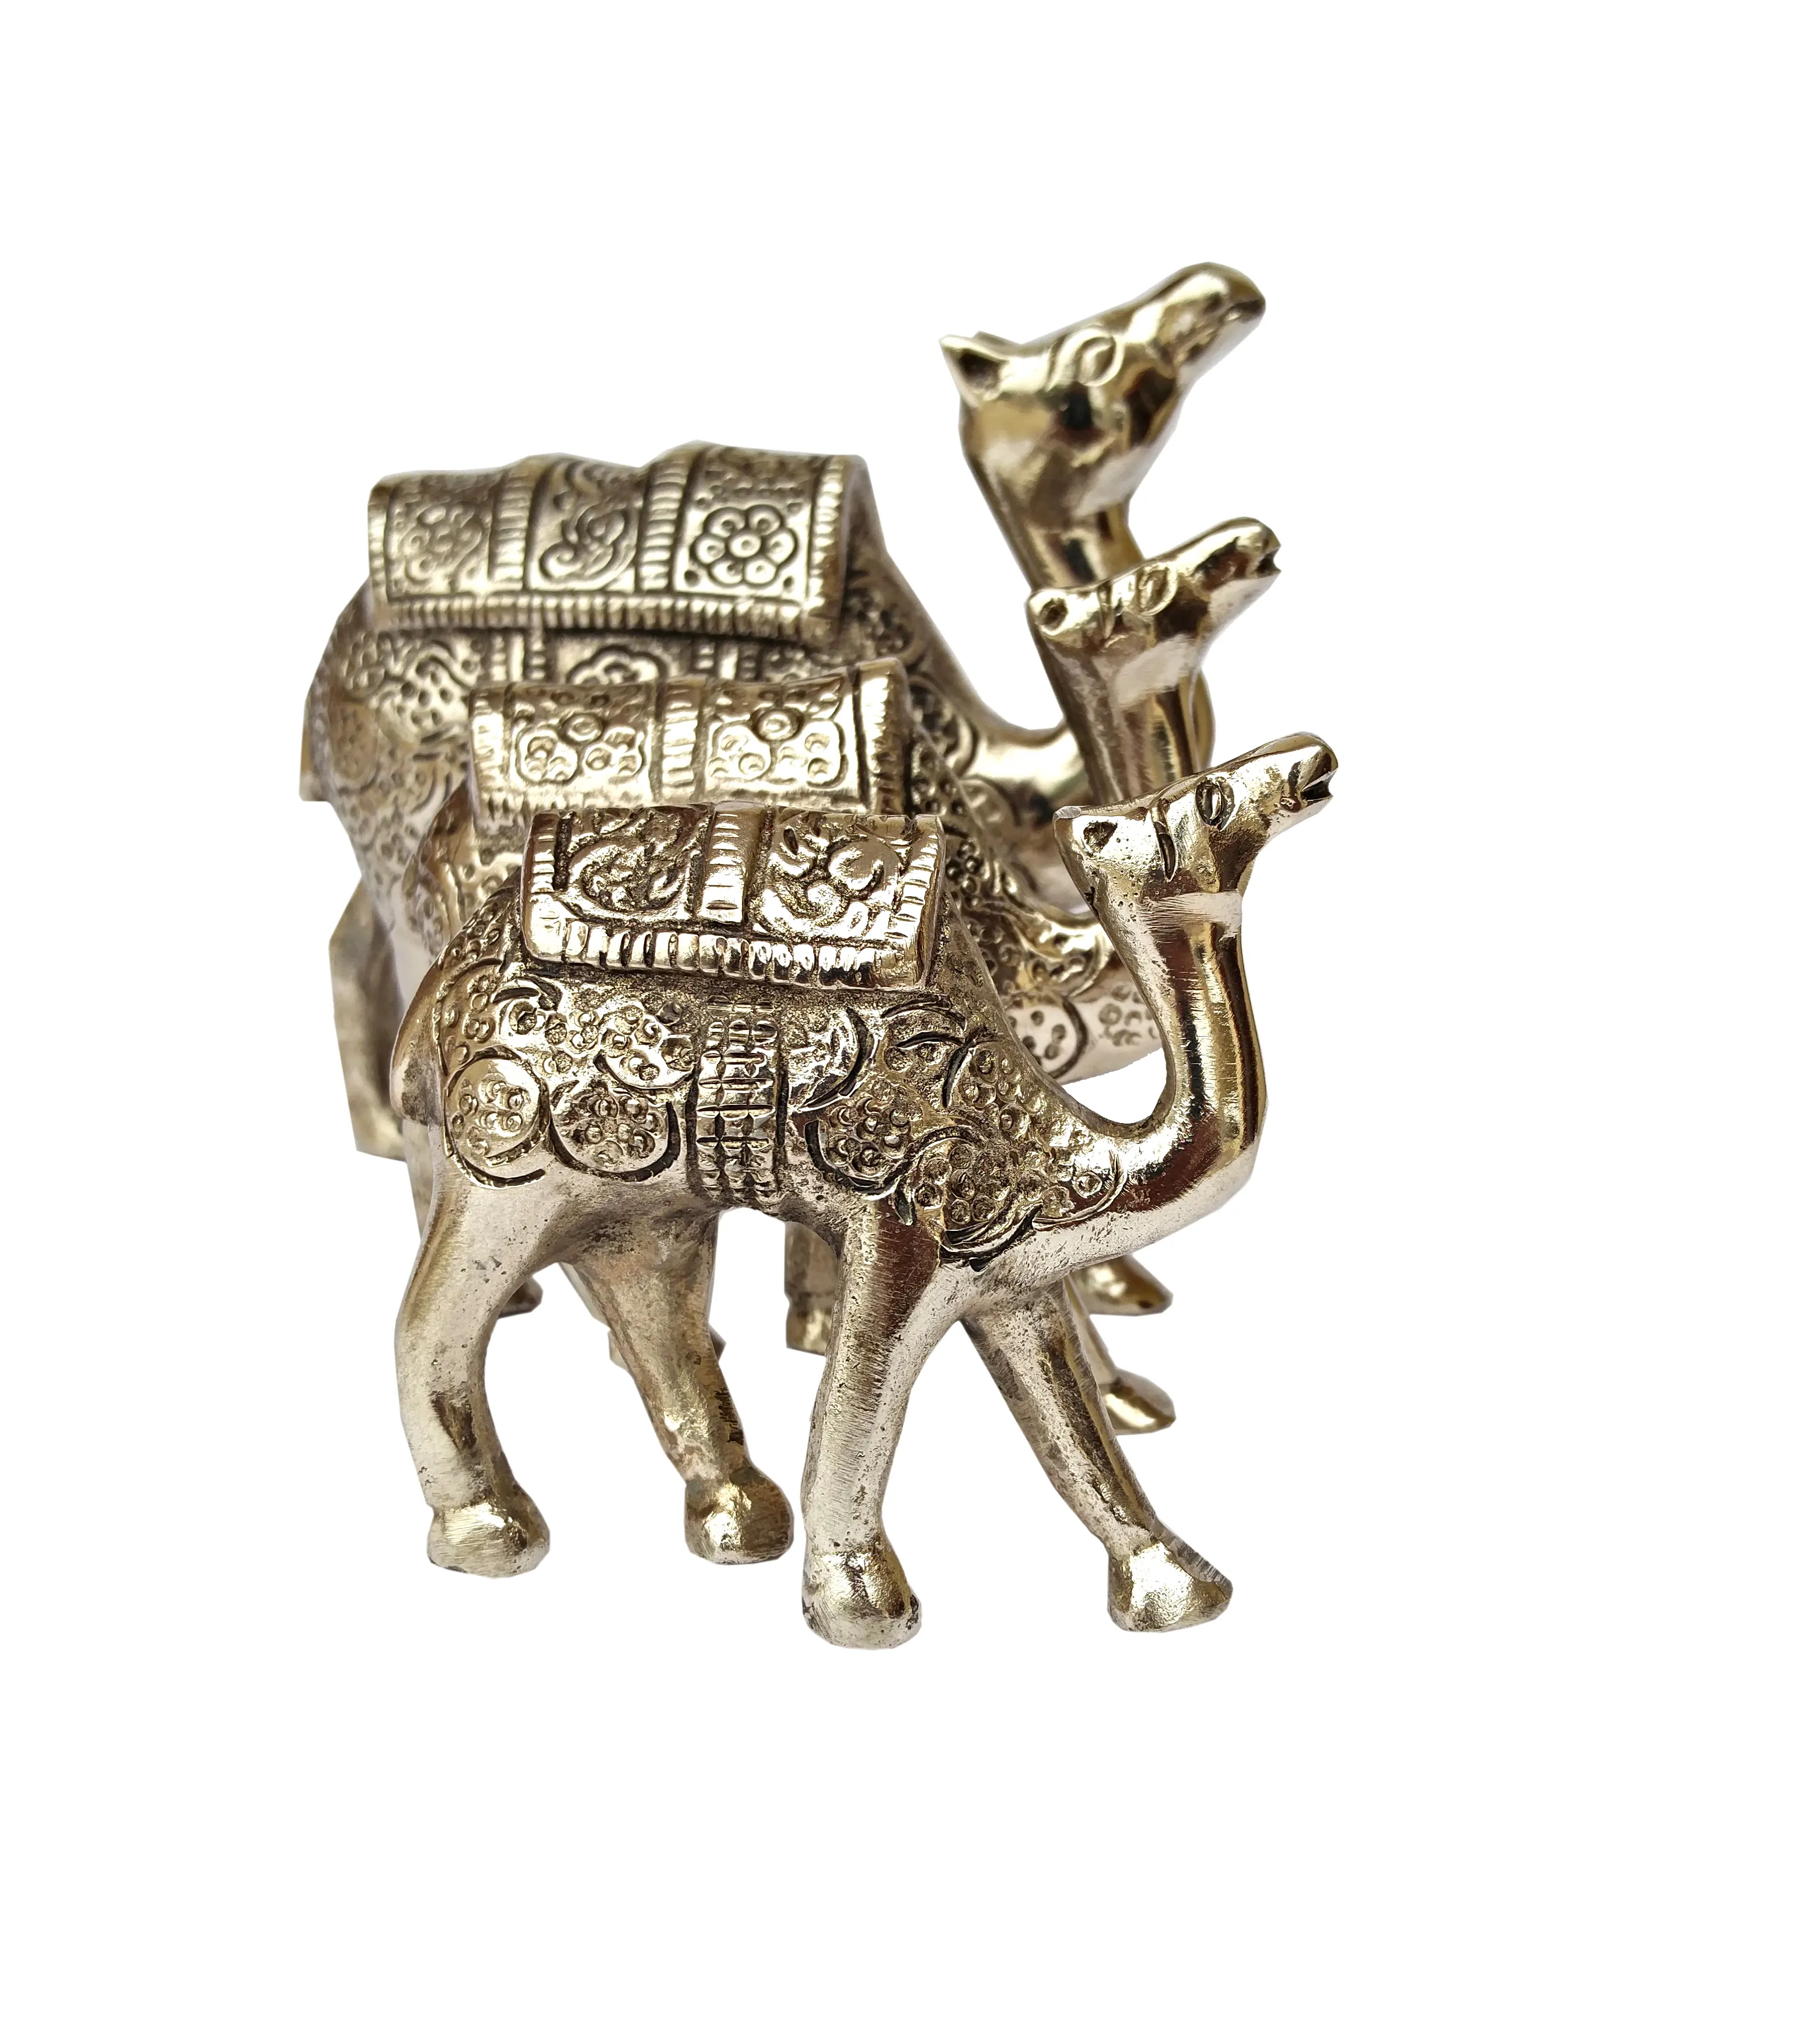 Fatto a mano in ottone bronzo antico argento cammello moderno deserto decorazione d'interni vendita indiano metallo artigianato di genere